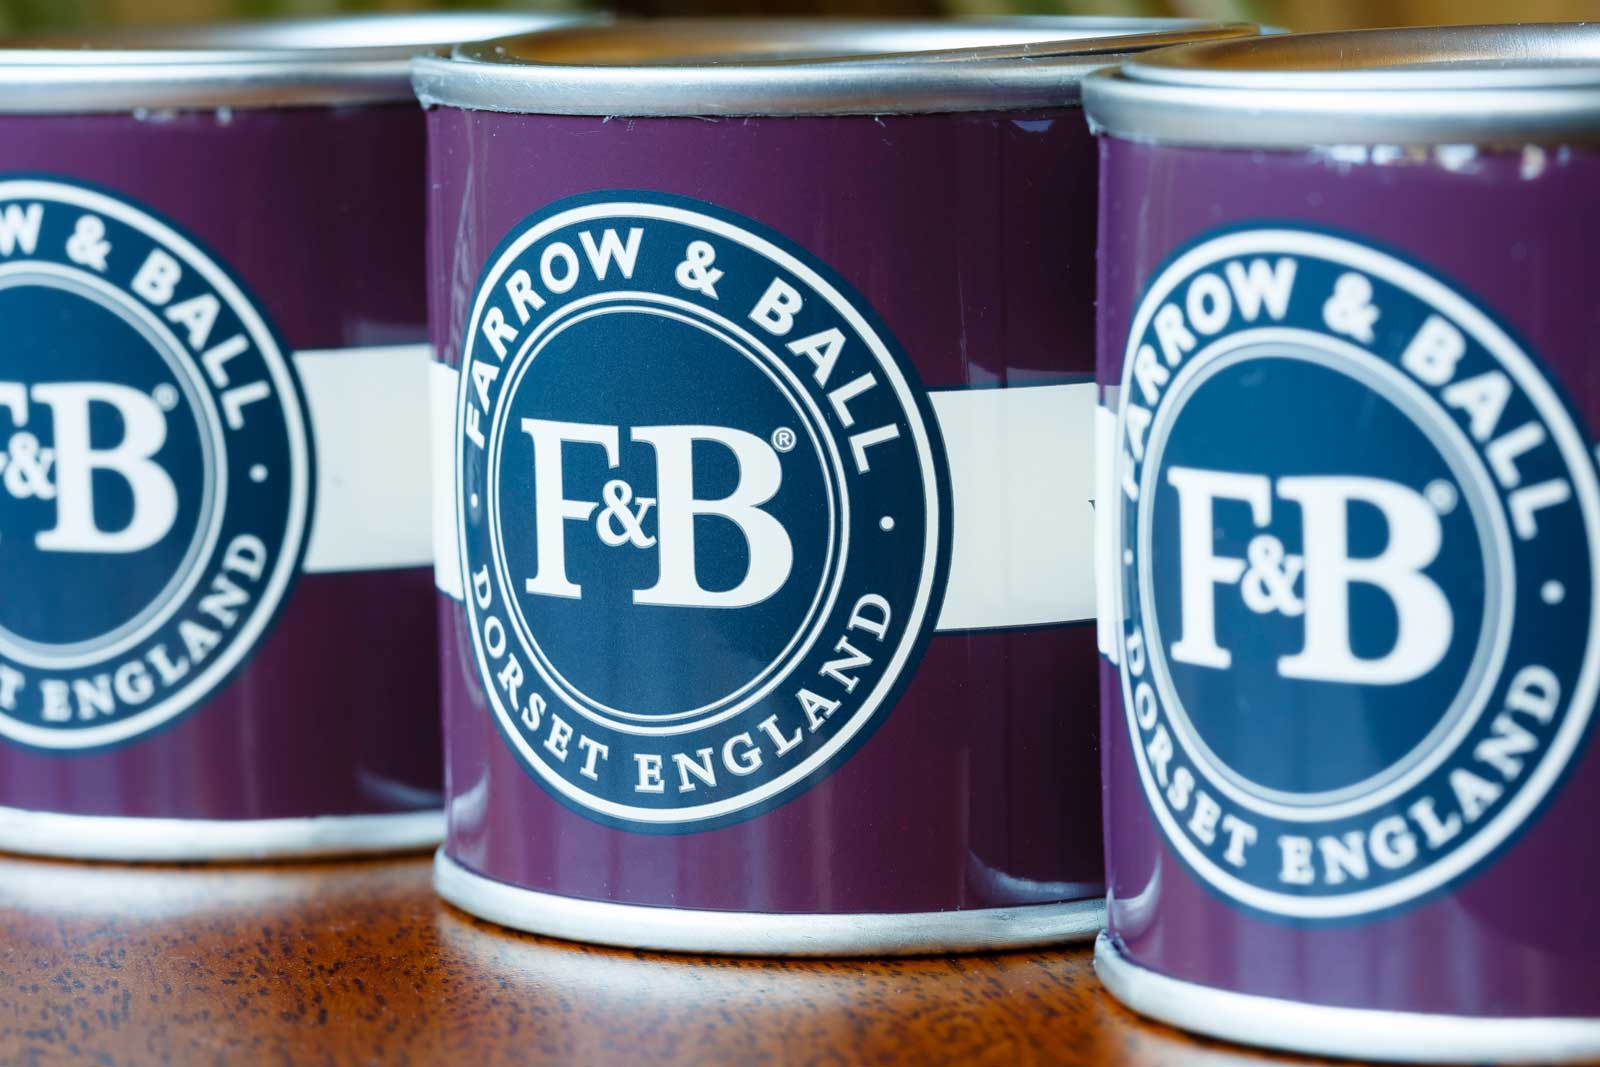 Farrow & Ball paint tins